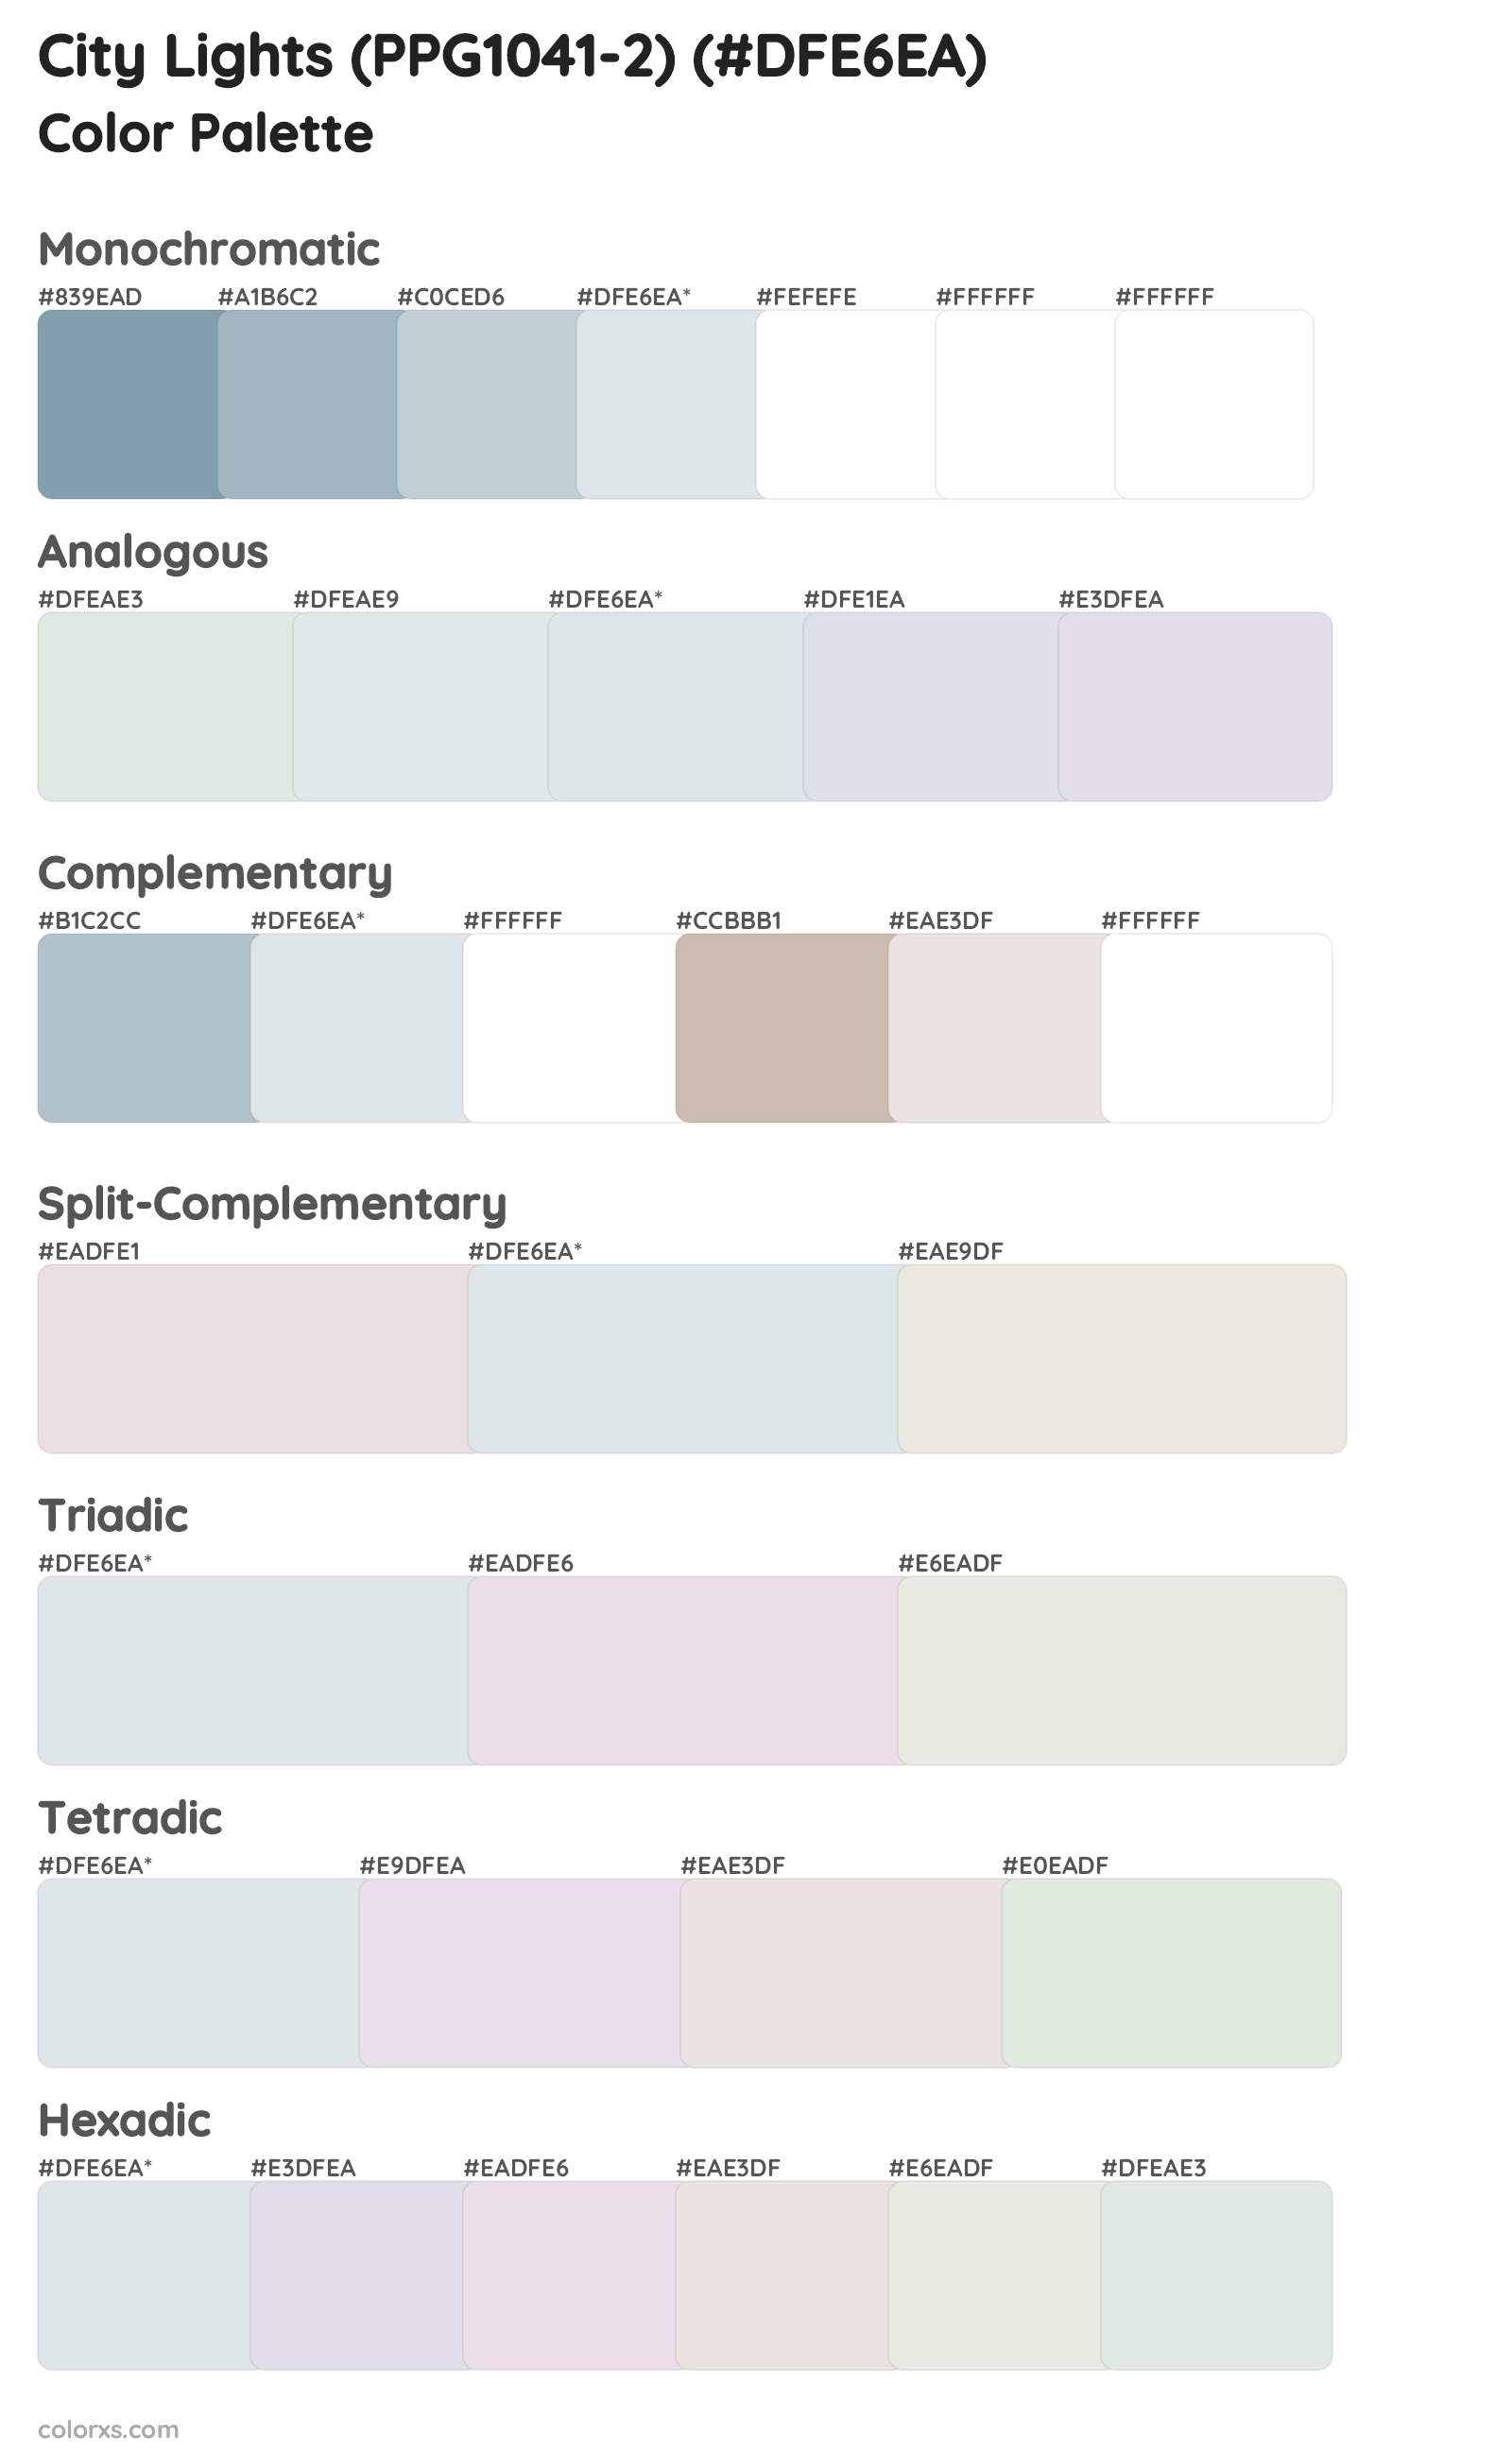 City Lights (PPG1041-2) Color Scheme Palettes